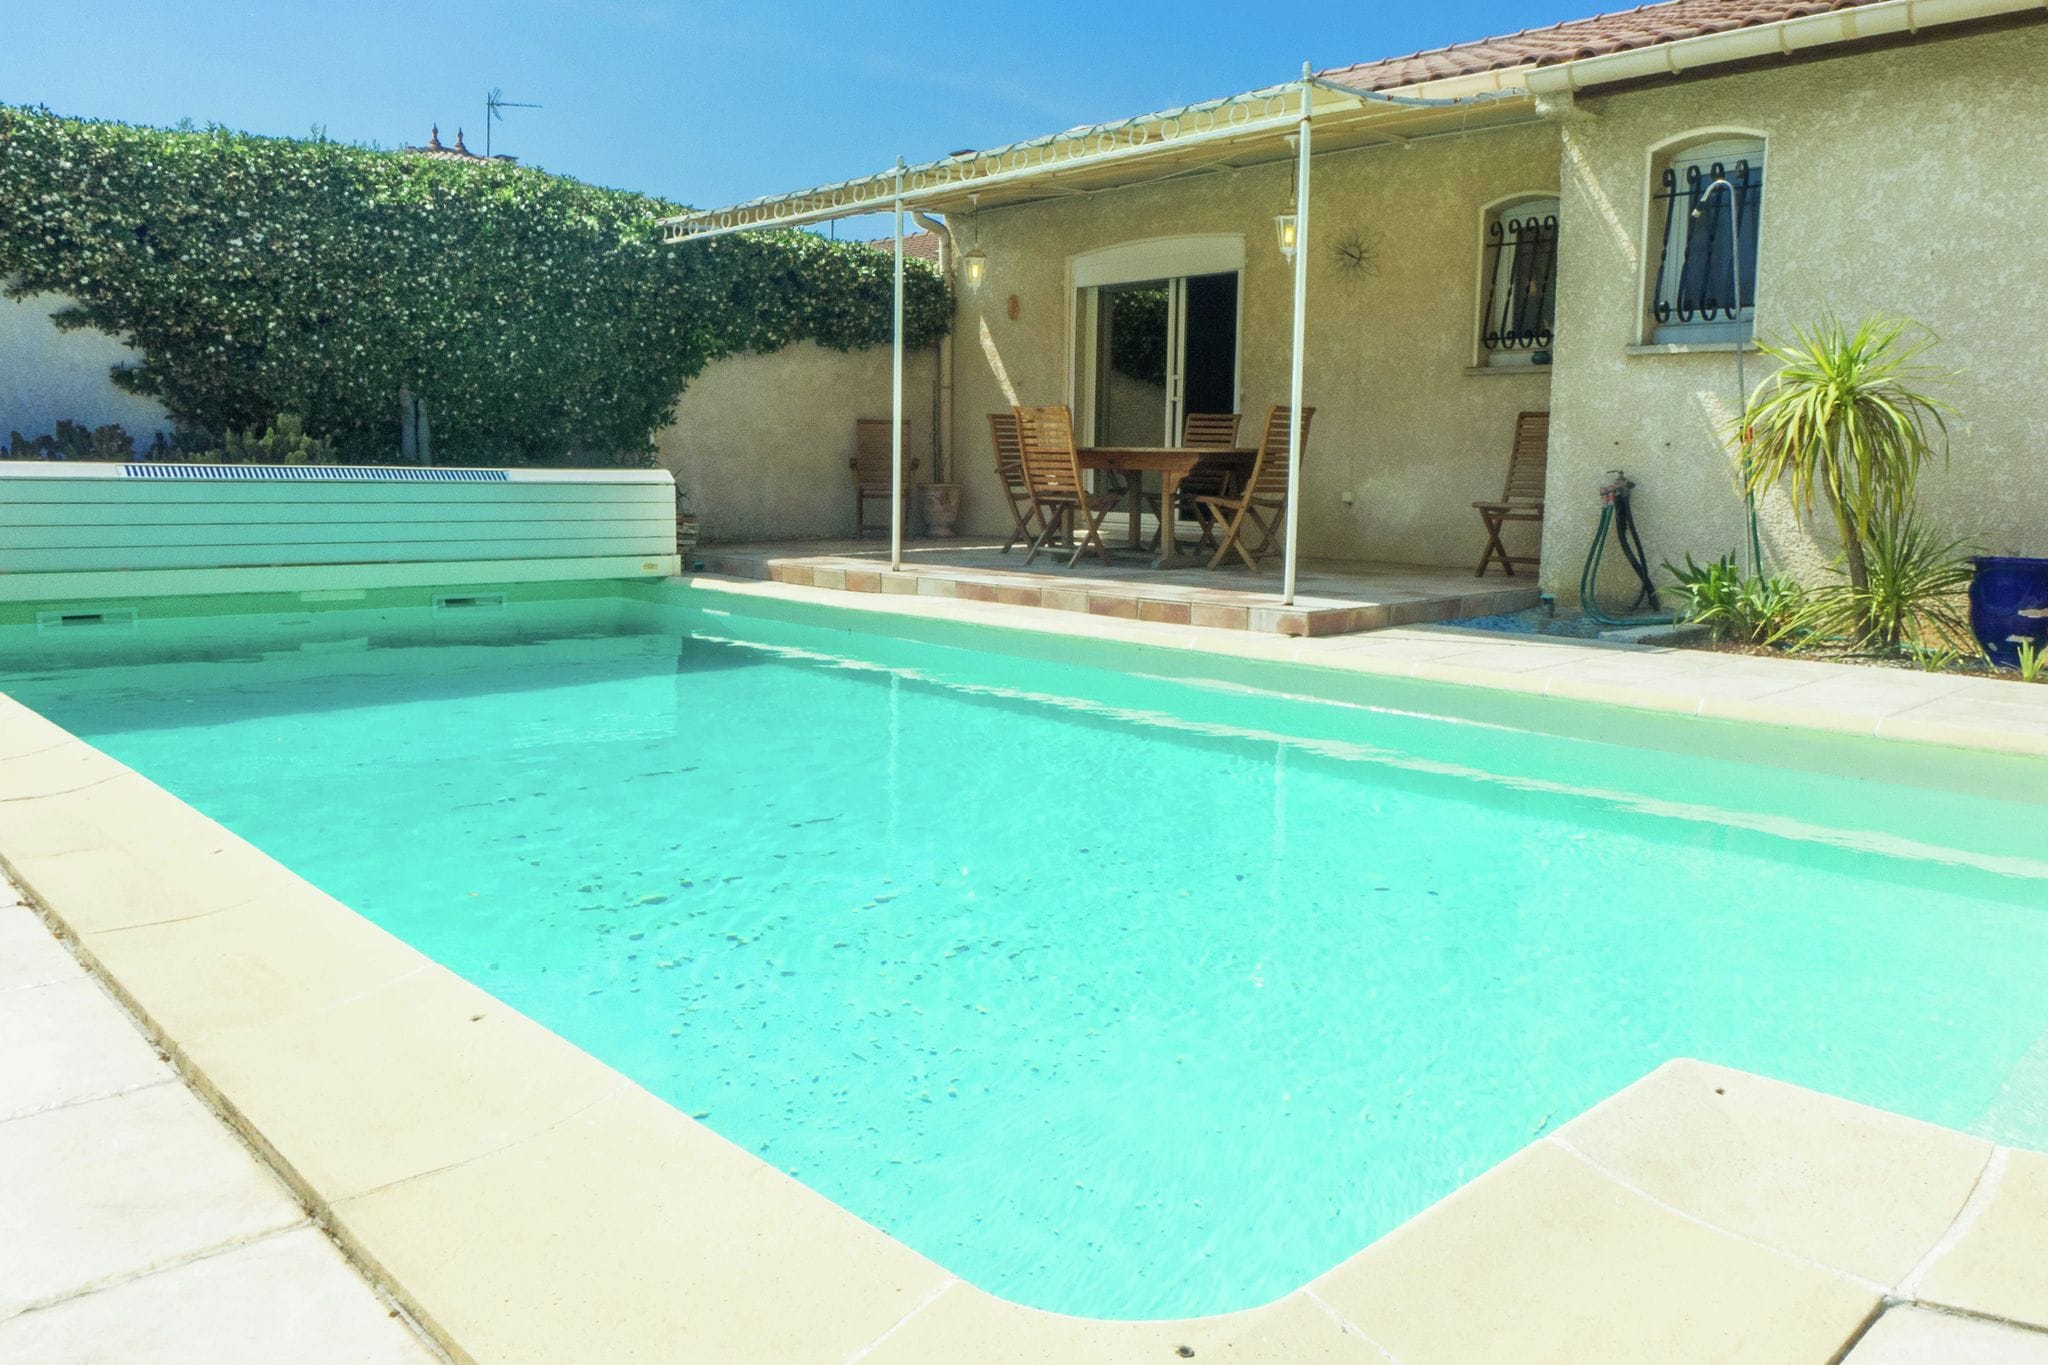 Fantastisch vakantiehuis met zwembad in Narbonne